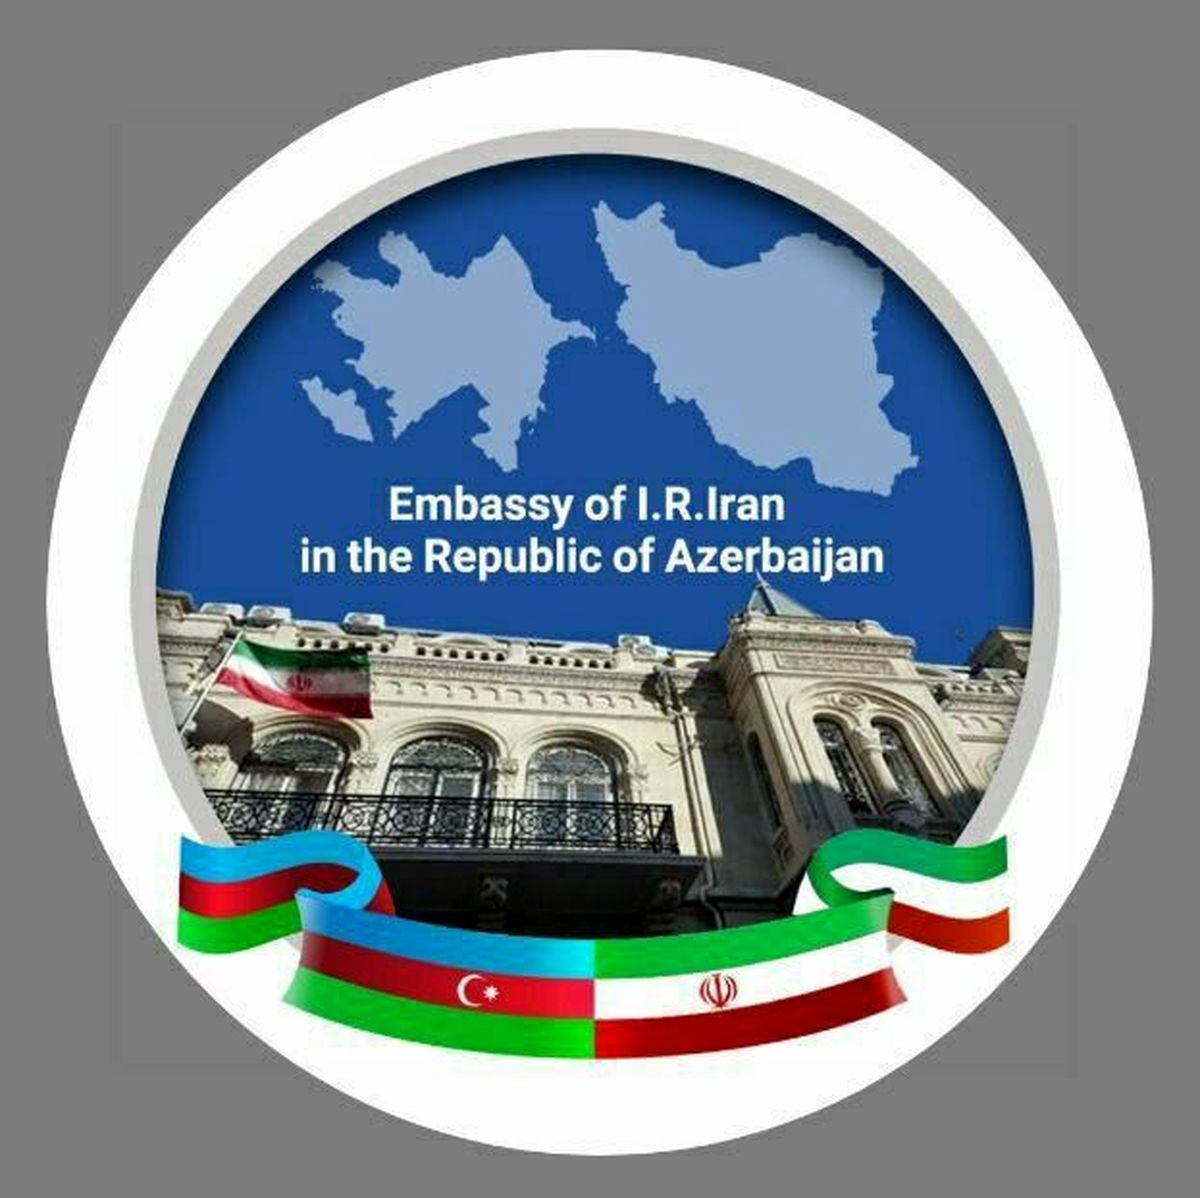 سفارت ایران خبر انتقال تسلیحات و نیرو به ارمنستان را تکذیب کرد